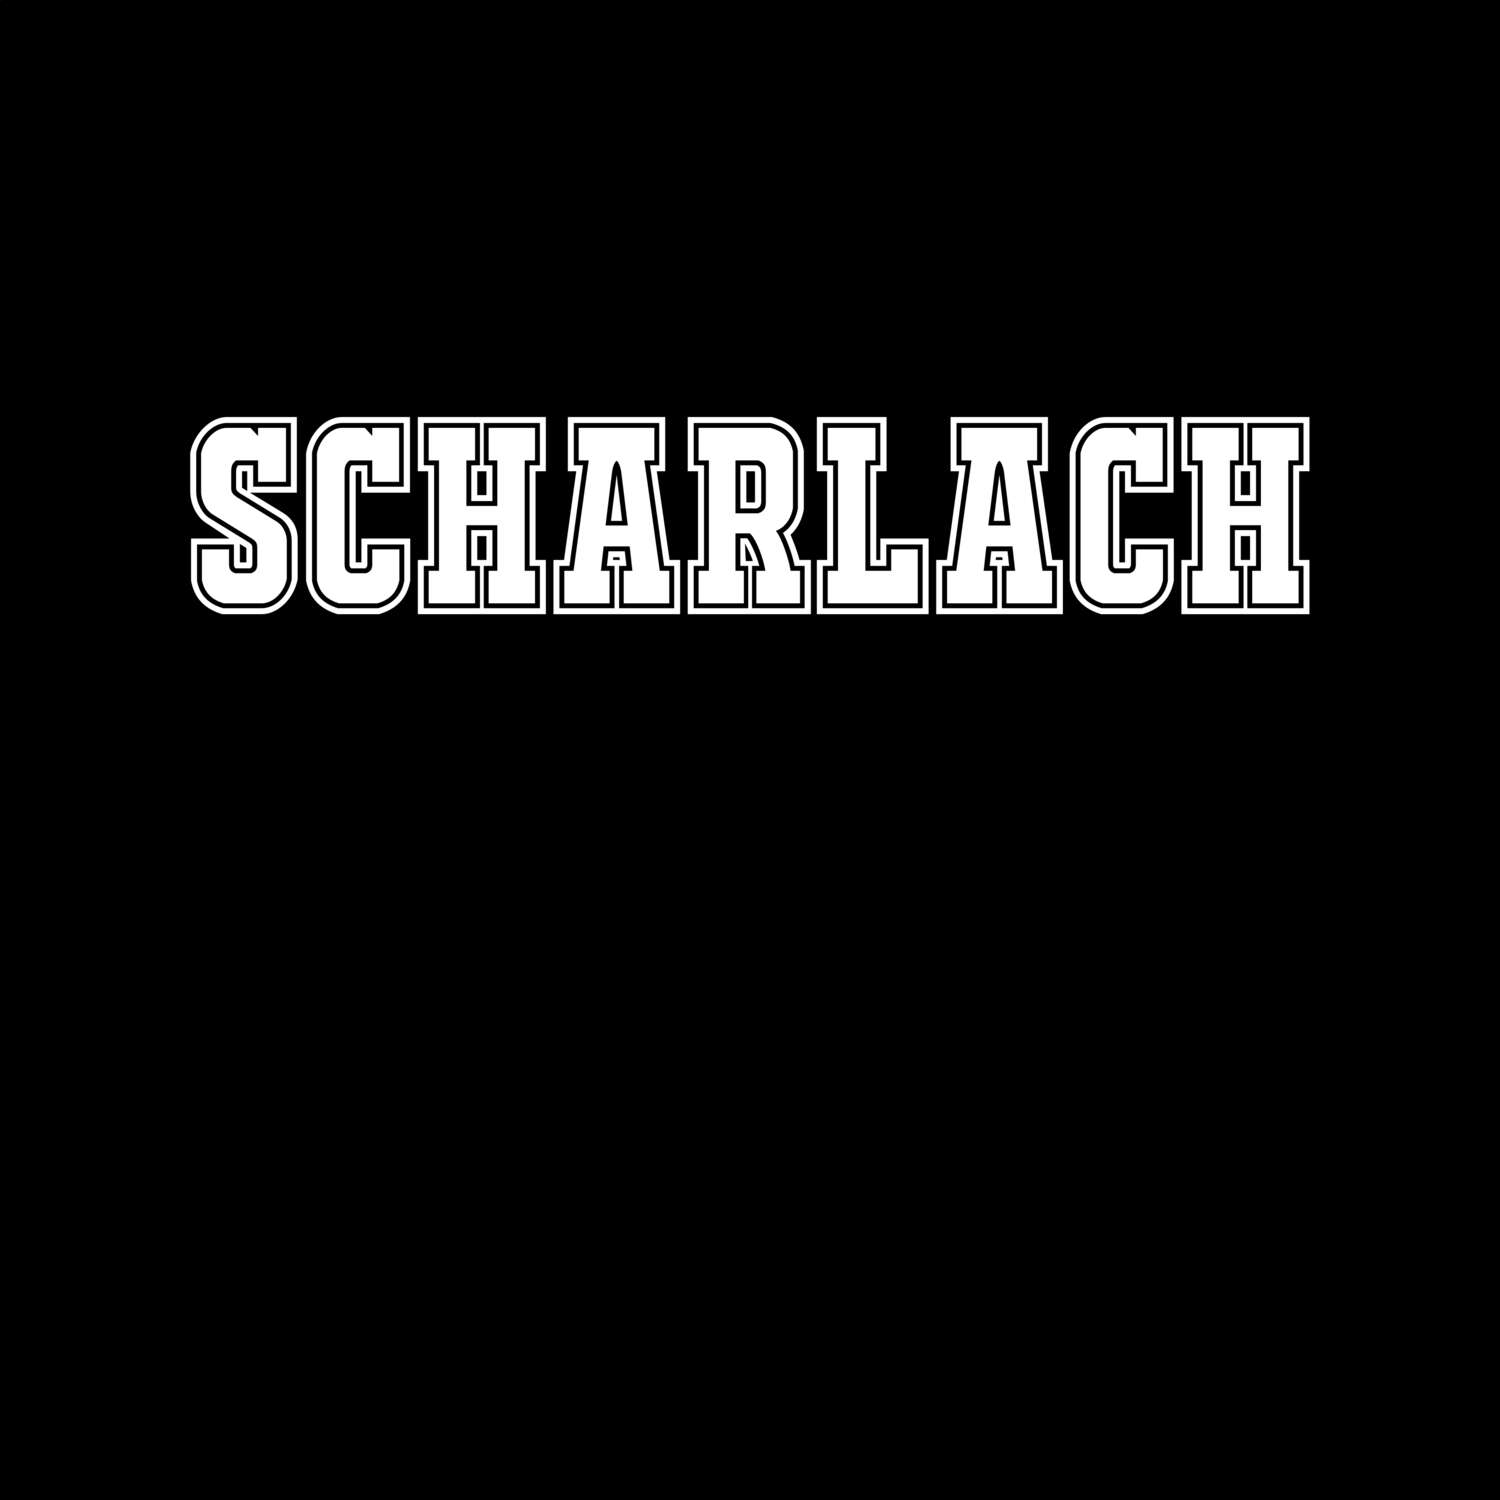 Scharlach T-Shirt »Classic«